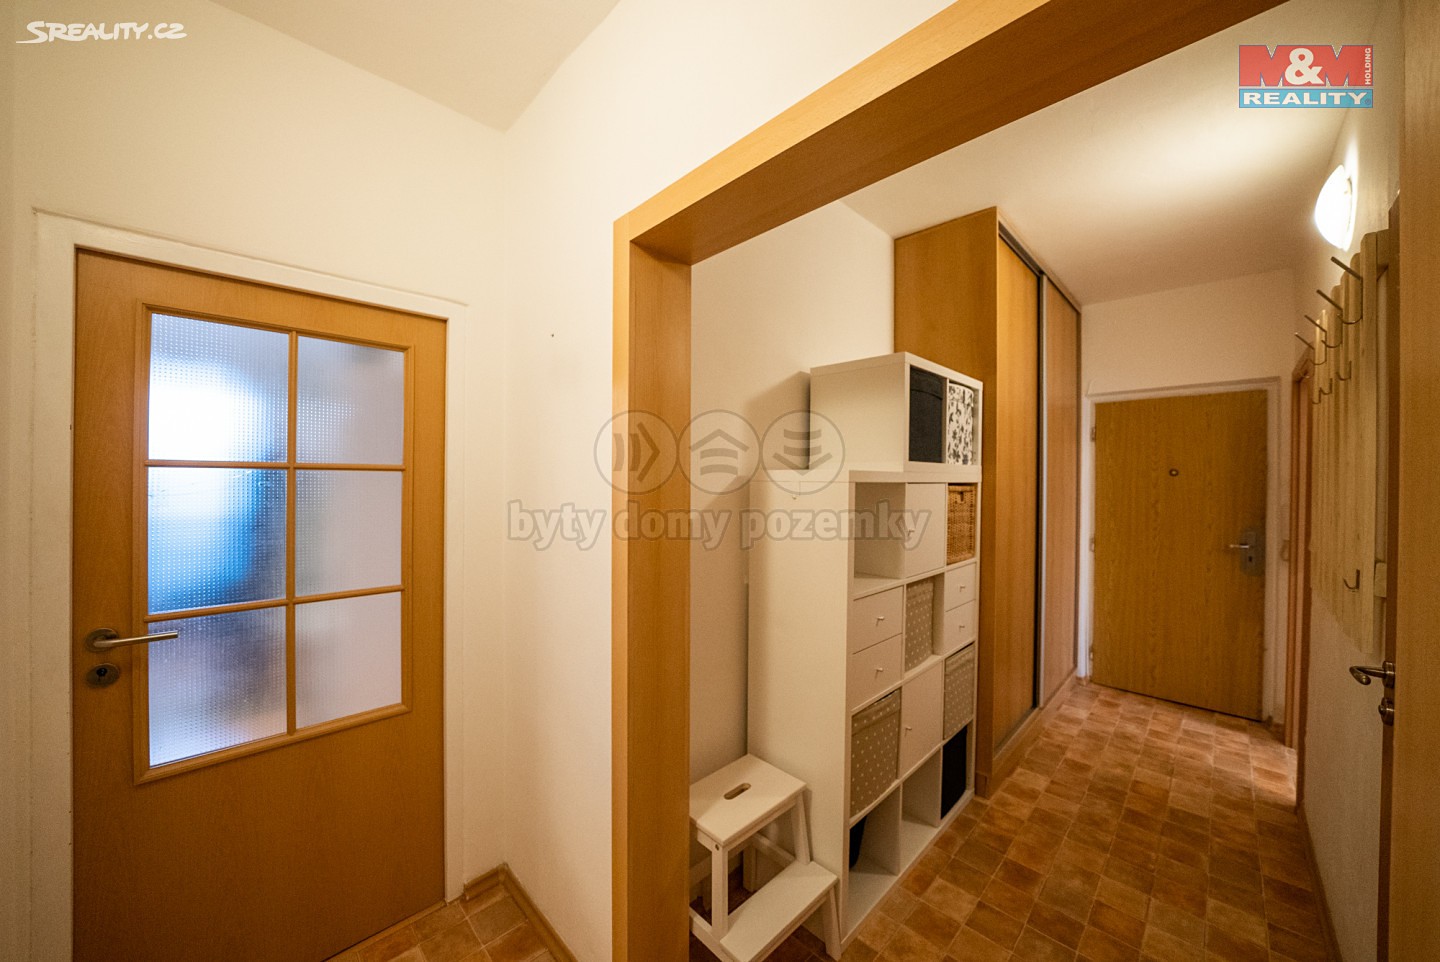 Prodej bytu 2+1 60 m², Krásného, Brno - Židenice